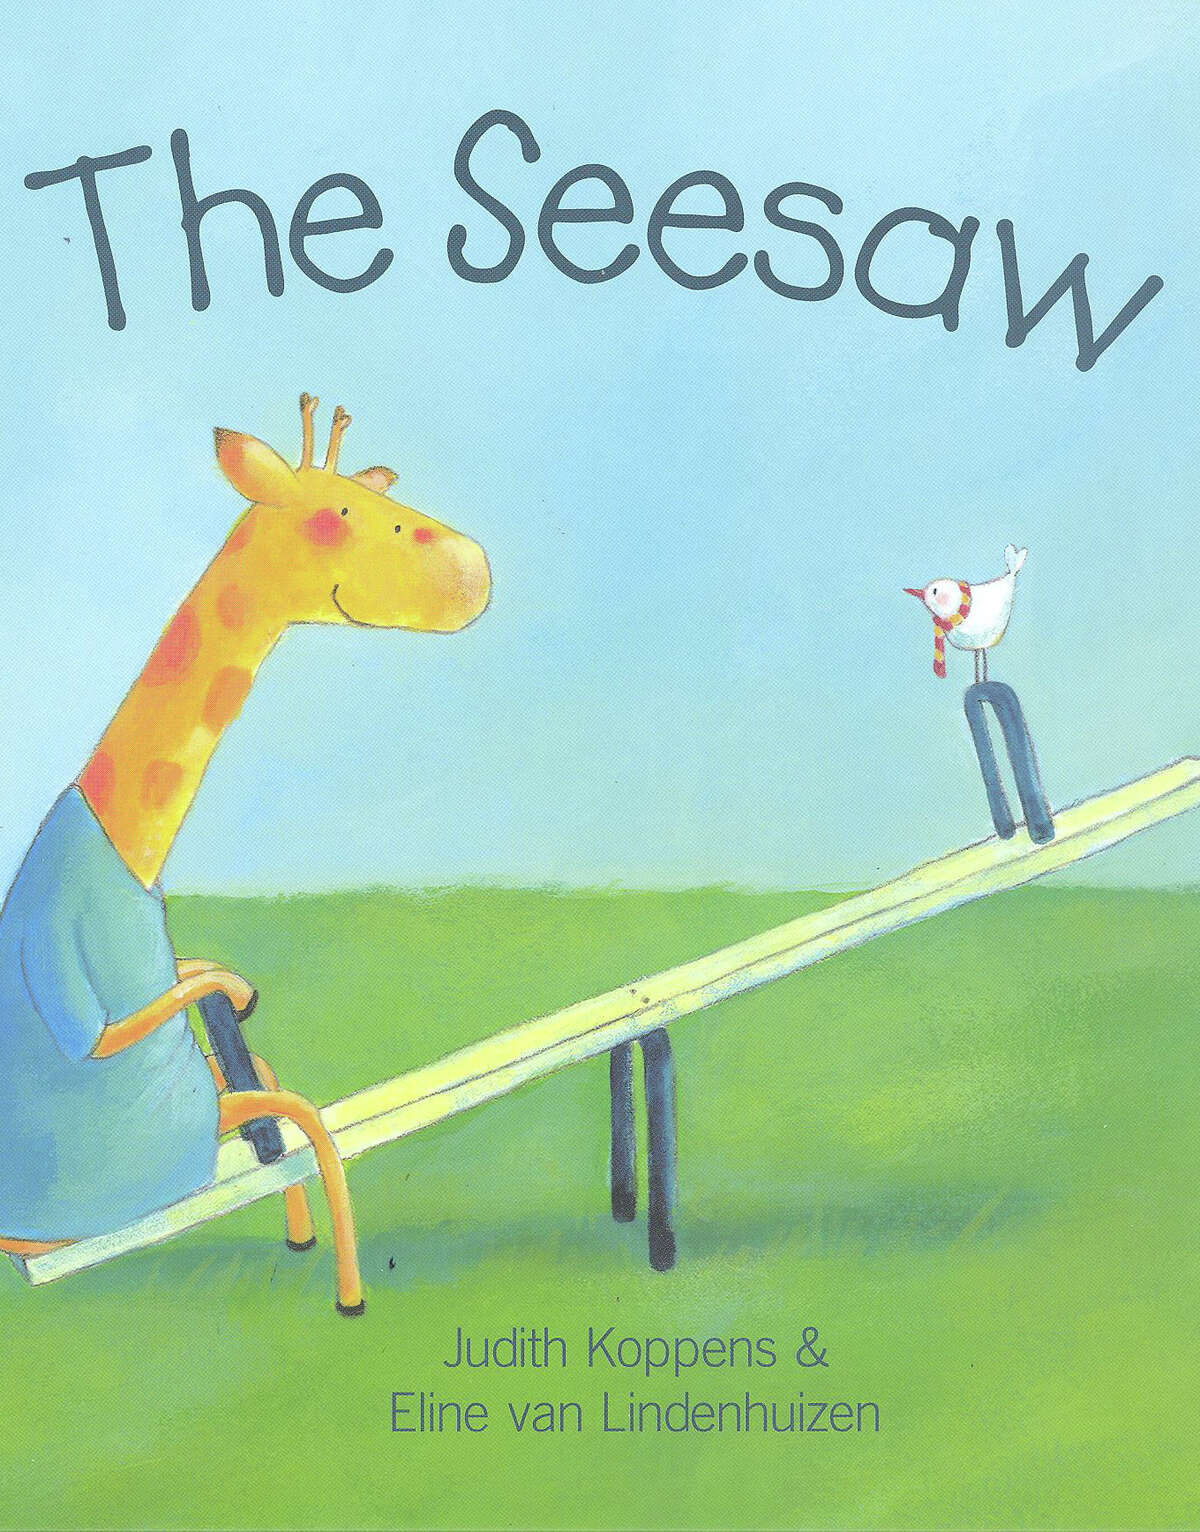 The Seesaw written by Judith Koppens and Eline van Lindenhuizen.